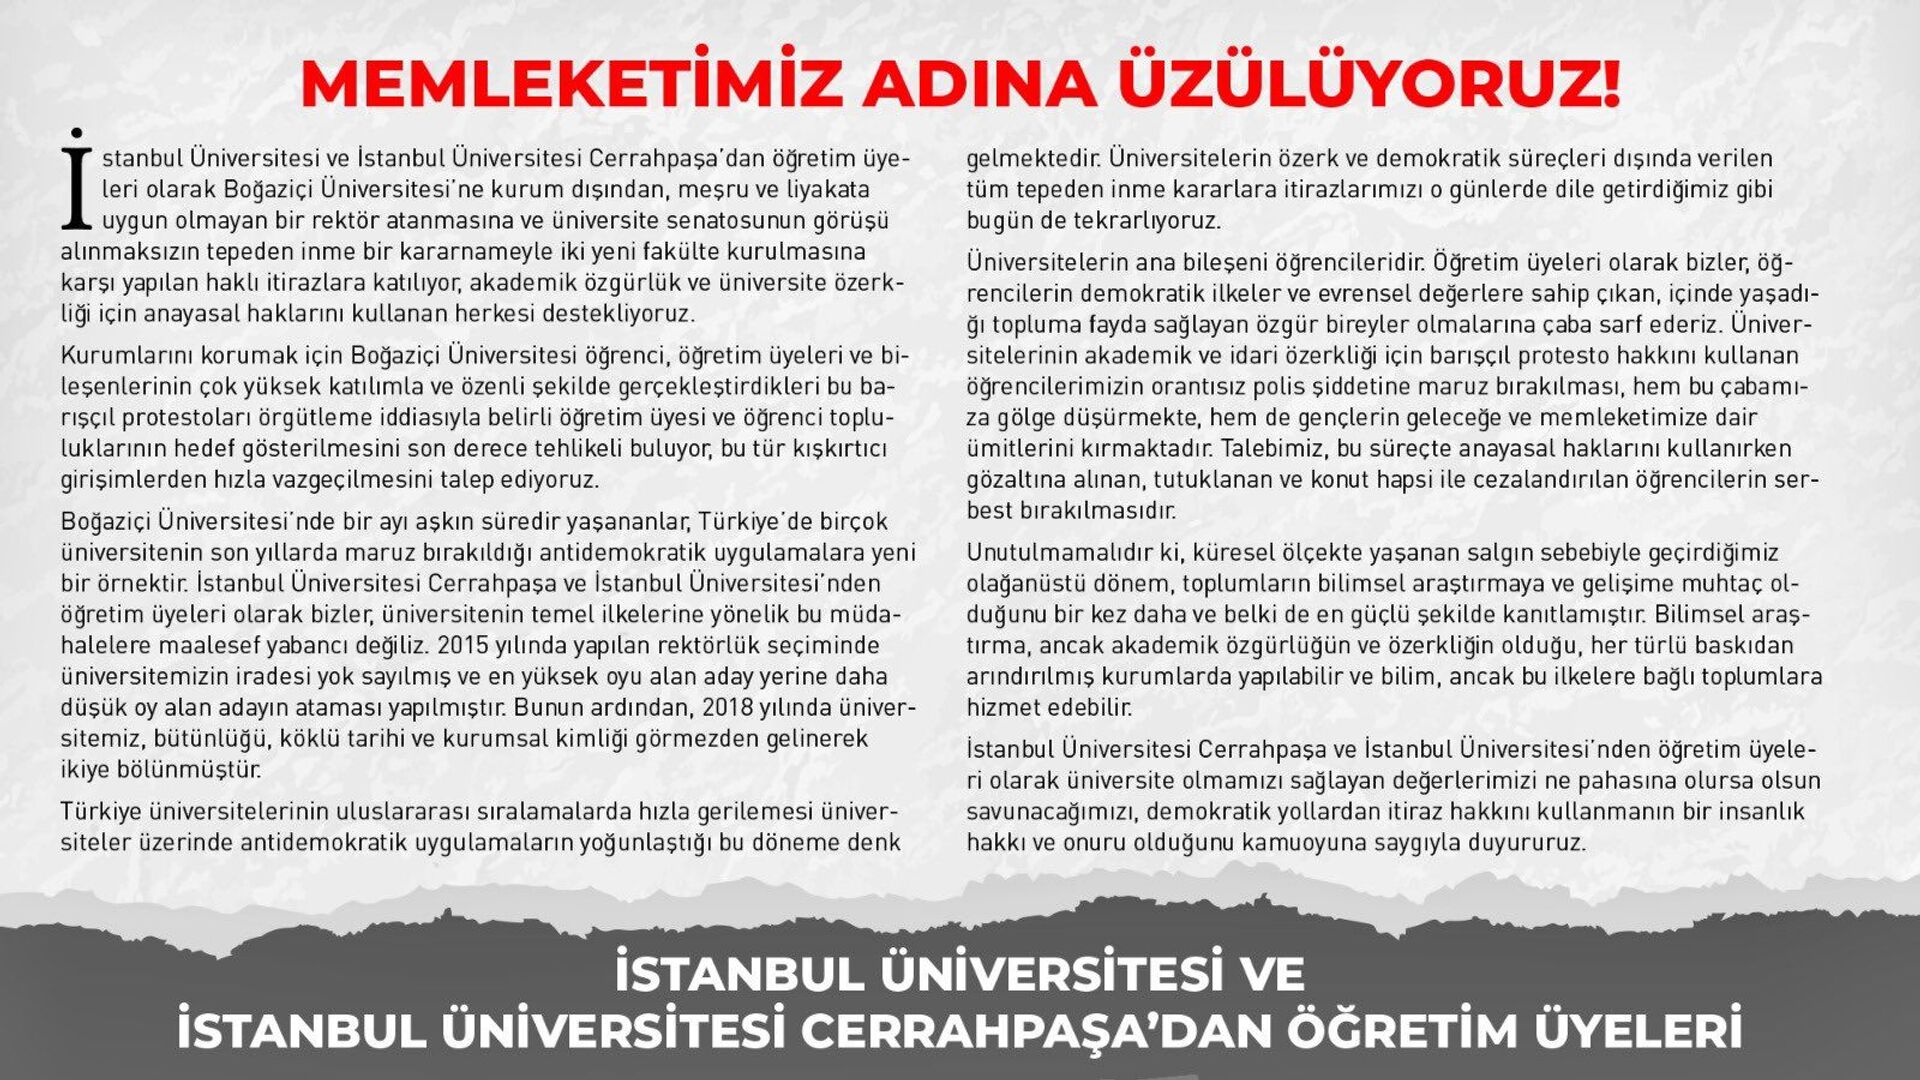 İstanbul Üniversitesi ve Cerrahpaşa öğretim üyelerinden Boğaziçi'ne destek bildirisi - Sputnik Türkiye, 1920, 11.02.2021